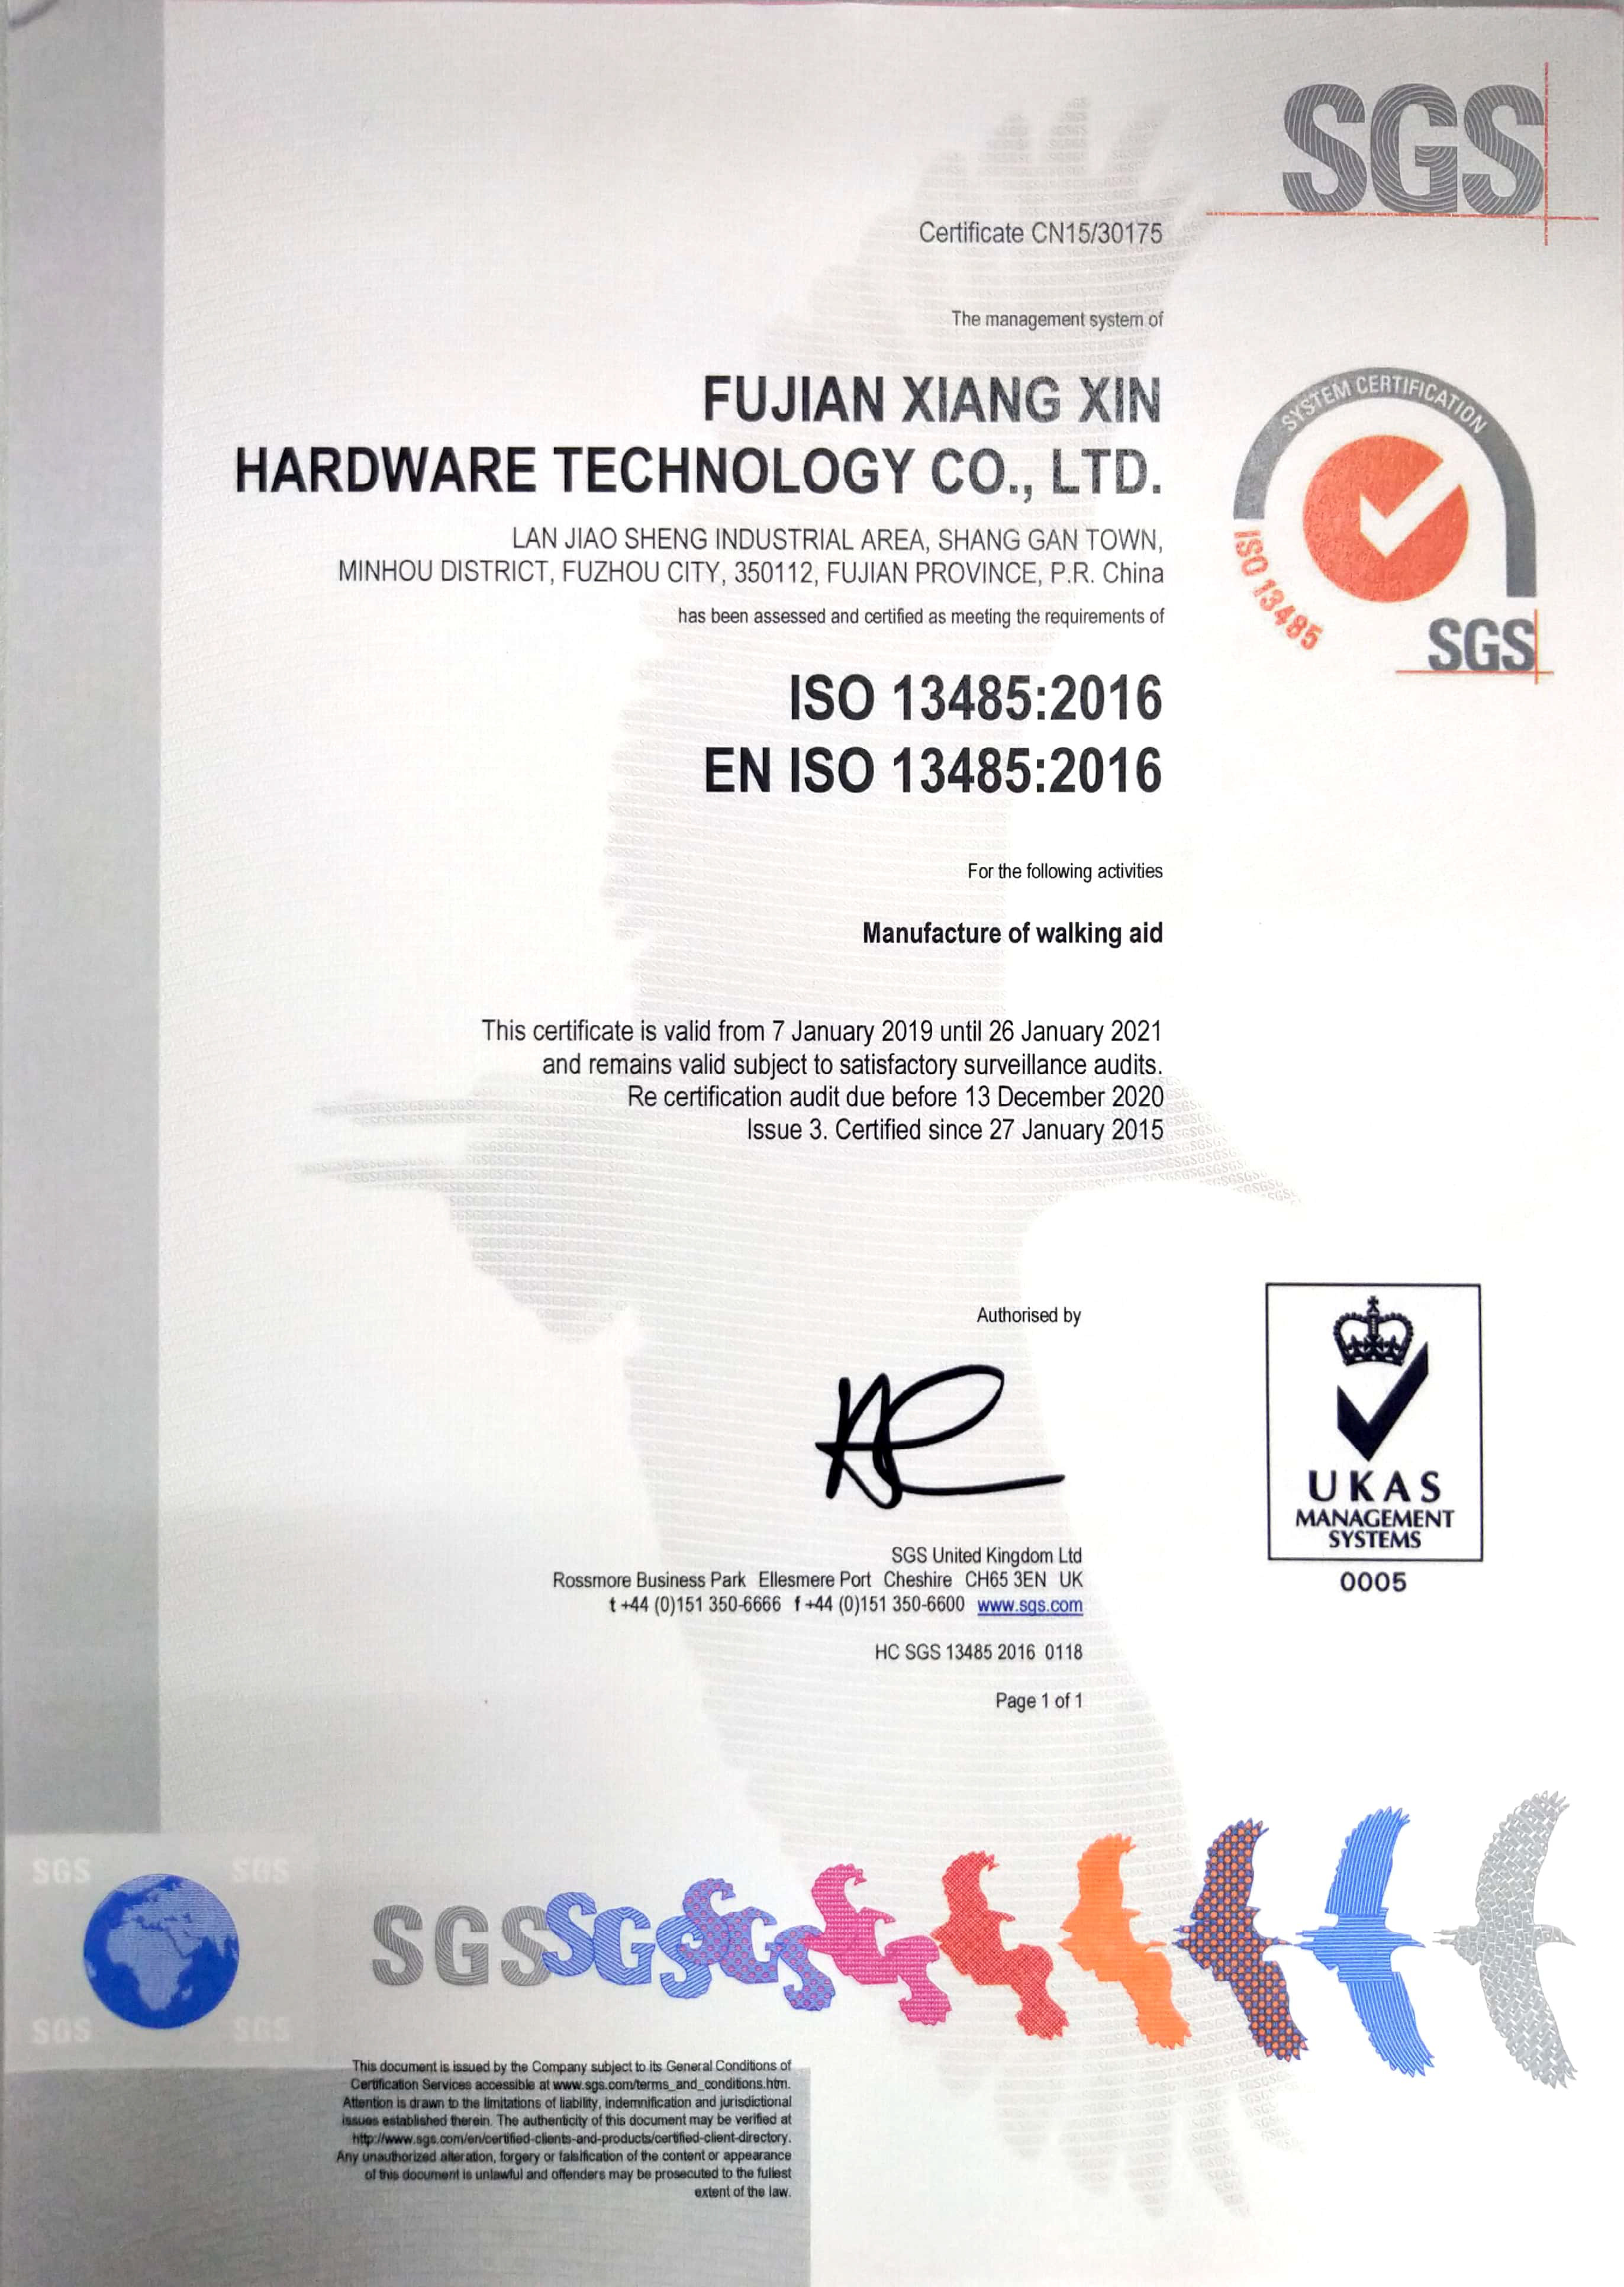 FUJIAN XIANG XIN CORPORATION LTD Certifications